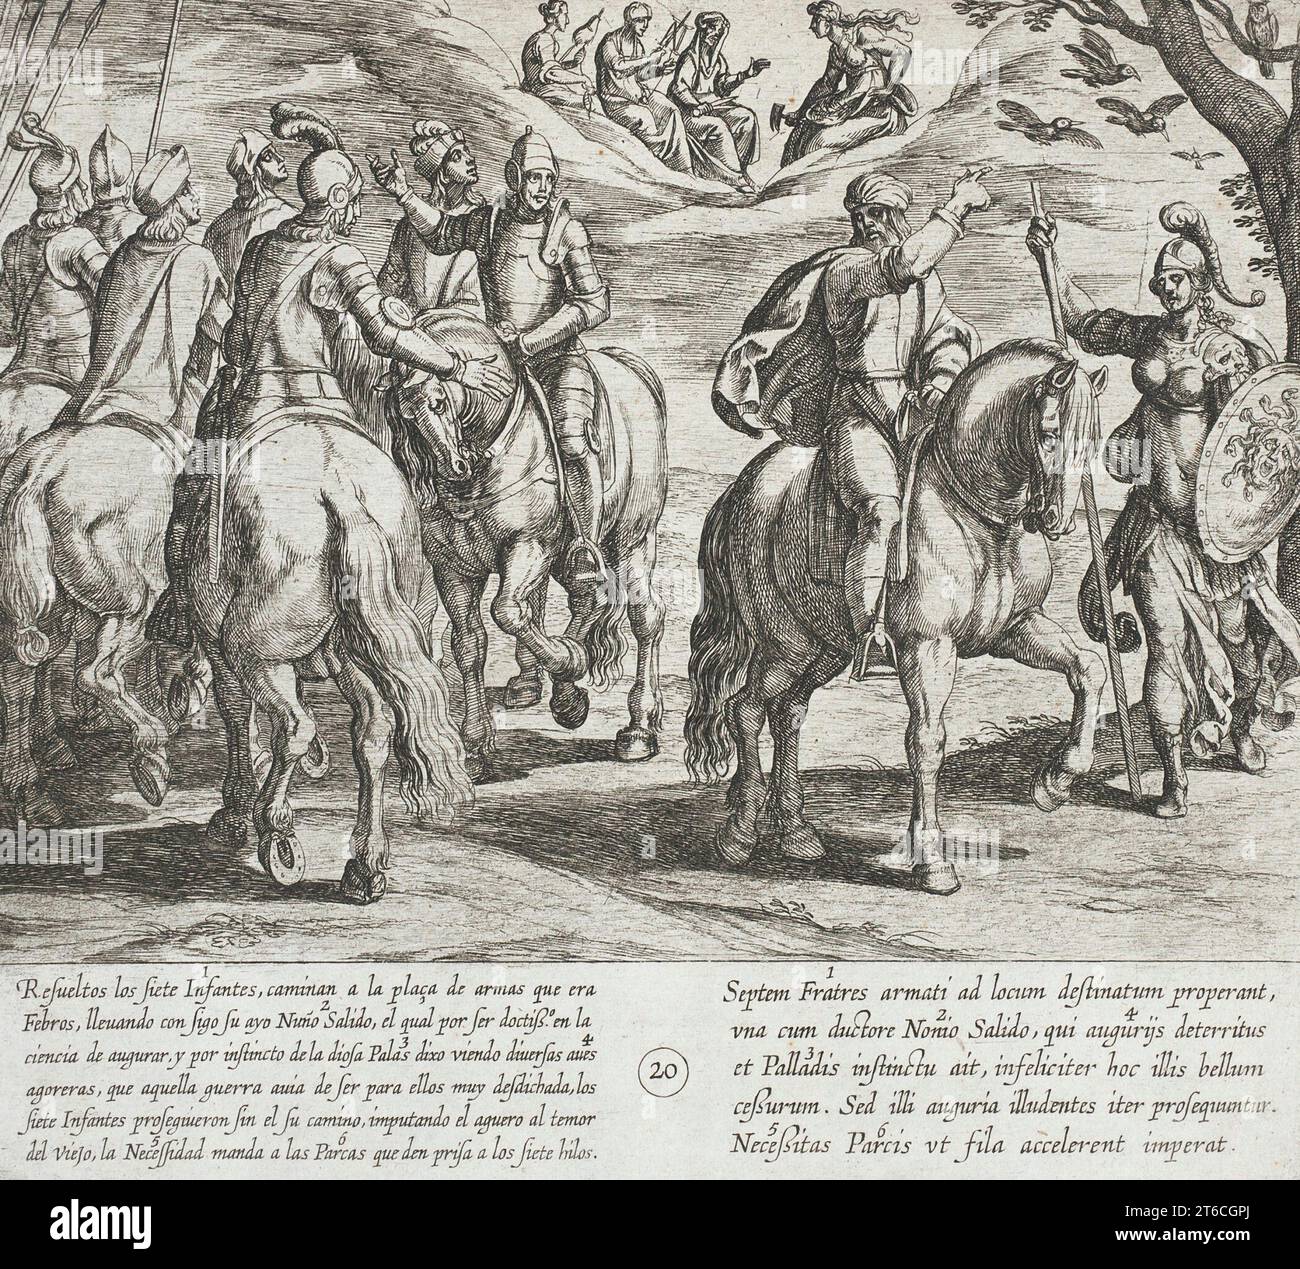 Nu&#xf1;o Salido, Tutor der Infanten, sieht in This war, 1612 böse Vorzeichen für sie. Serie: Die Geschichte der sieben Söhne von Lara, pl. 20. Stockfoto